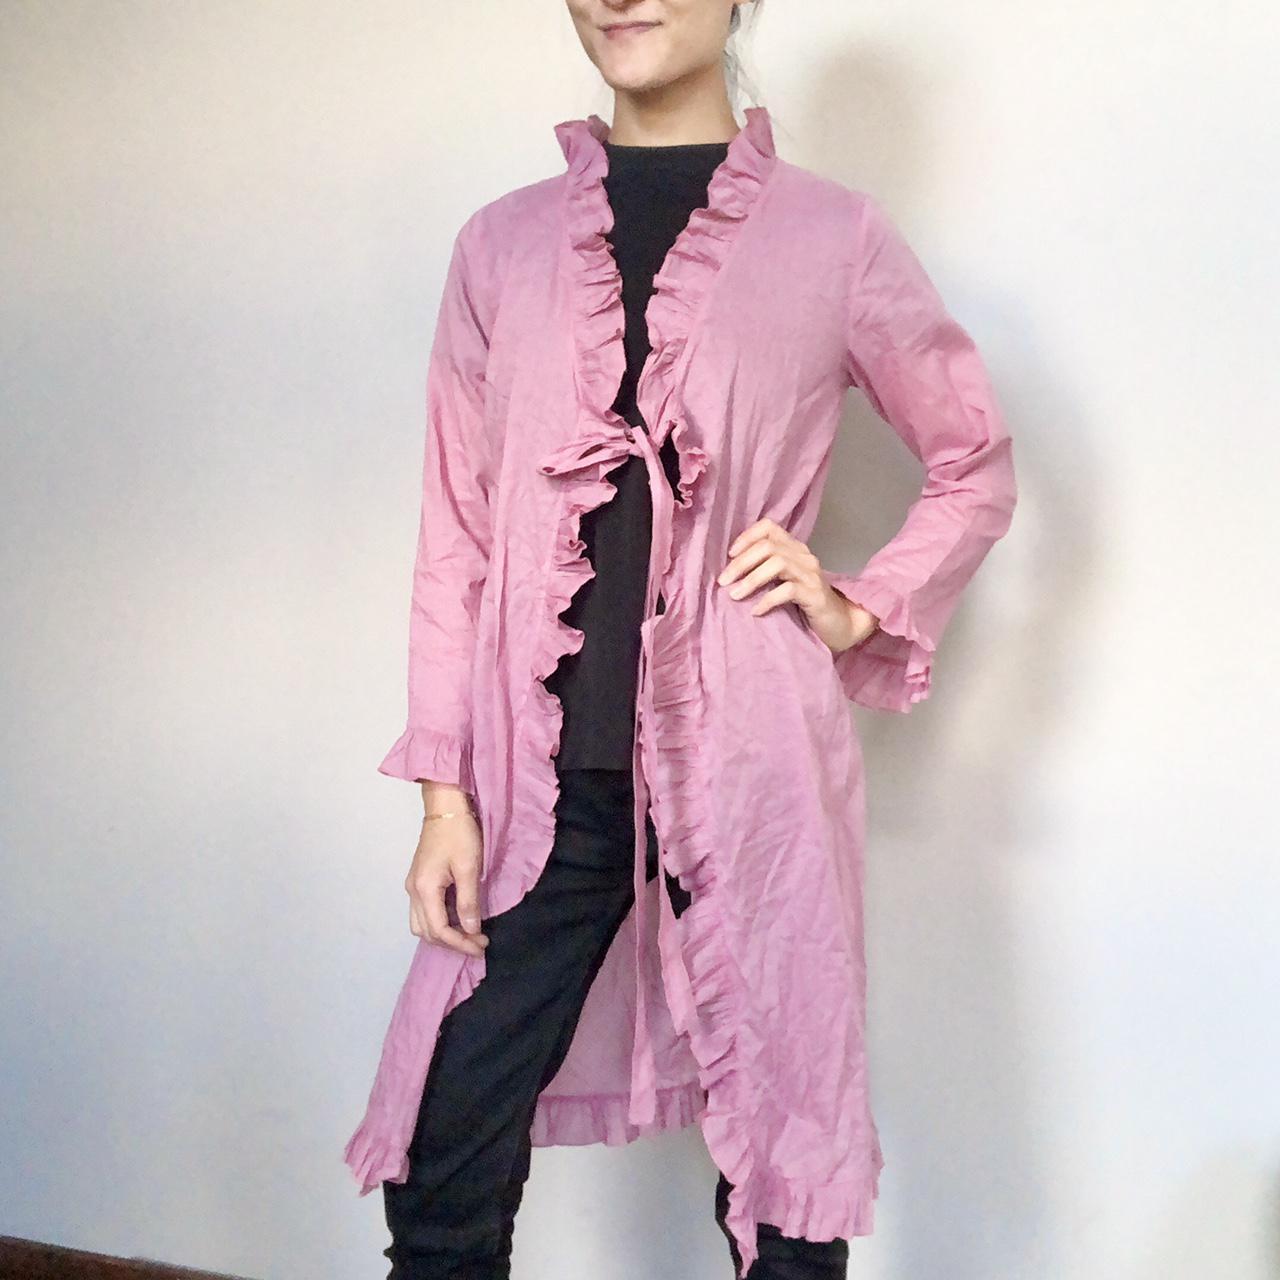 Product Image 2 - Sweet peignoir/ dressing gown/ kimono